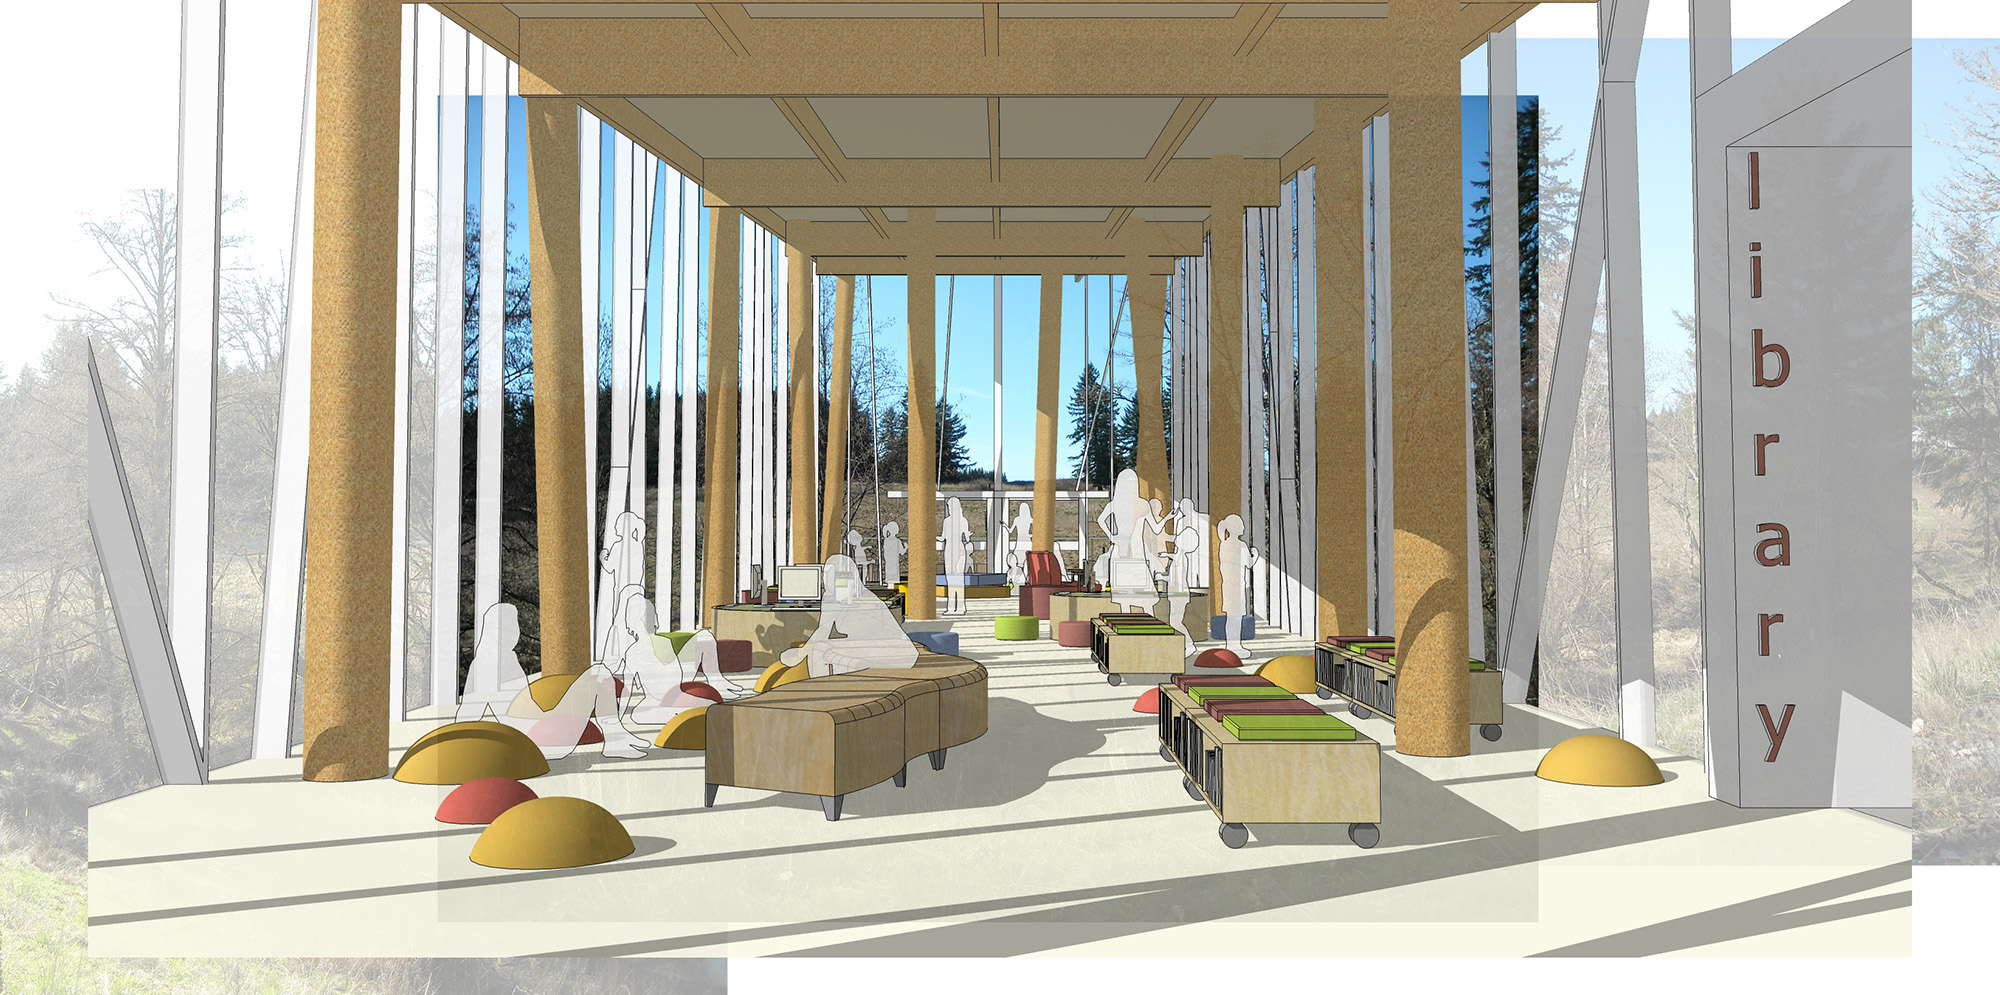 Woodburn Elementary School Camas Library rendering